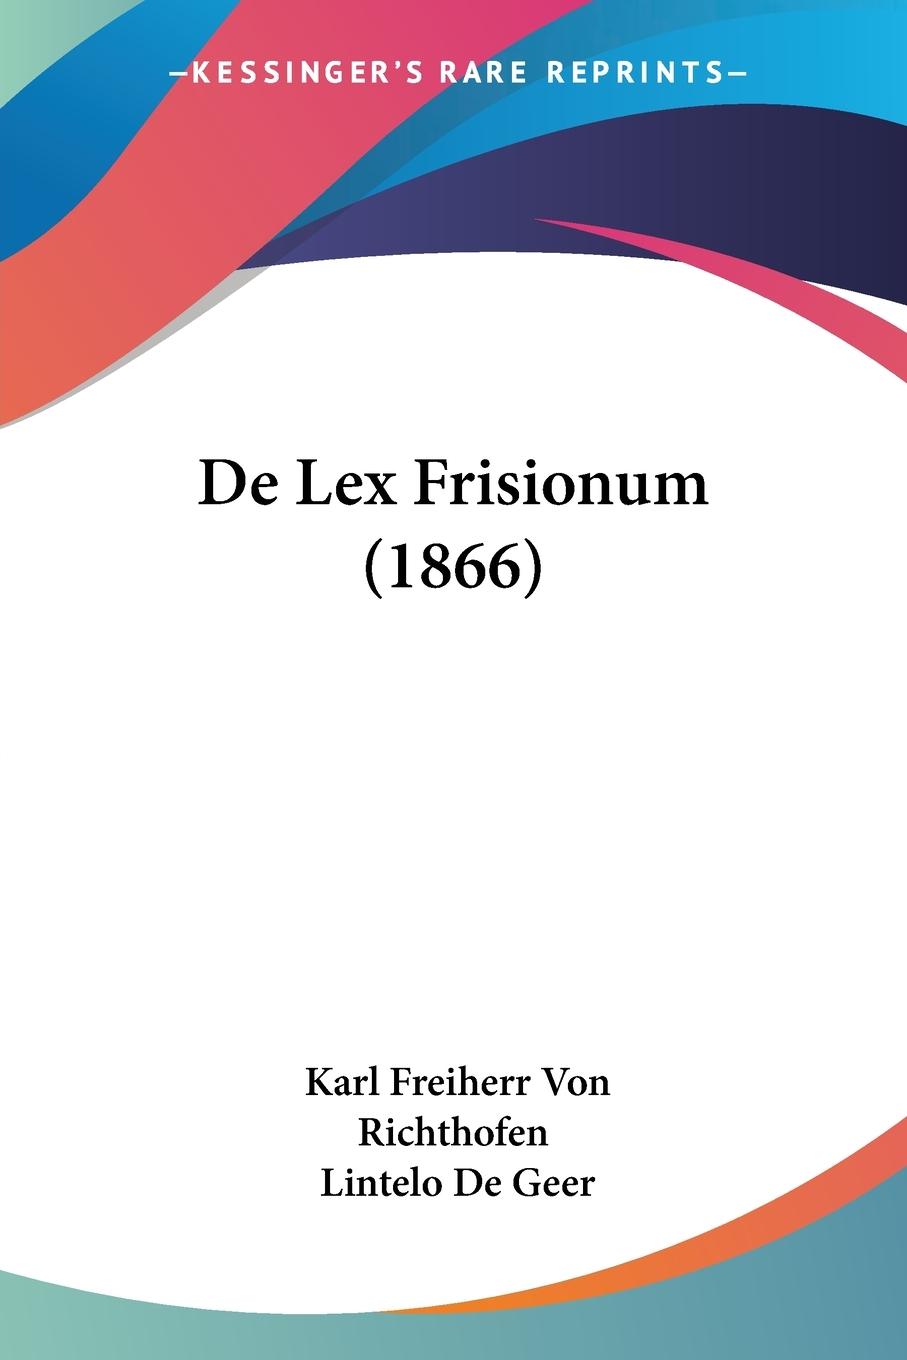 De Lex Frisionum (1866) - Richthofen, Karl Freiherr Von De Geer, Lintelo